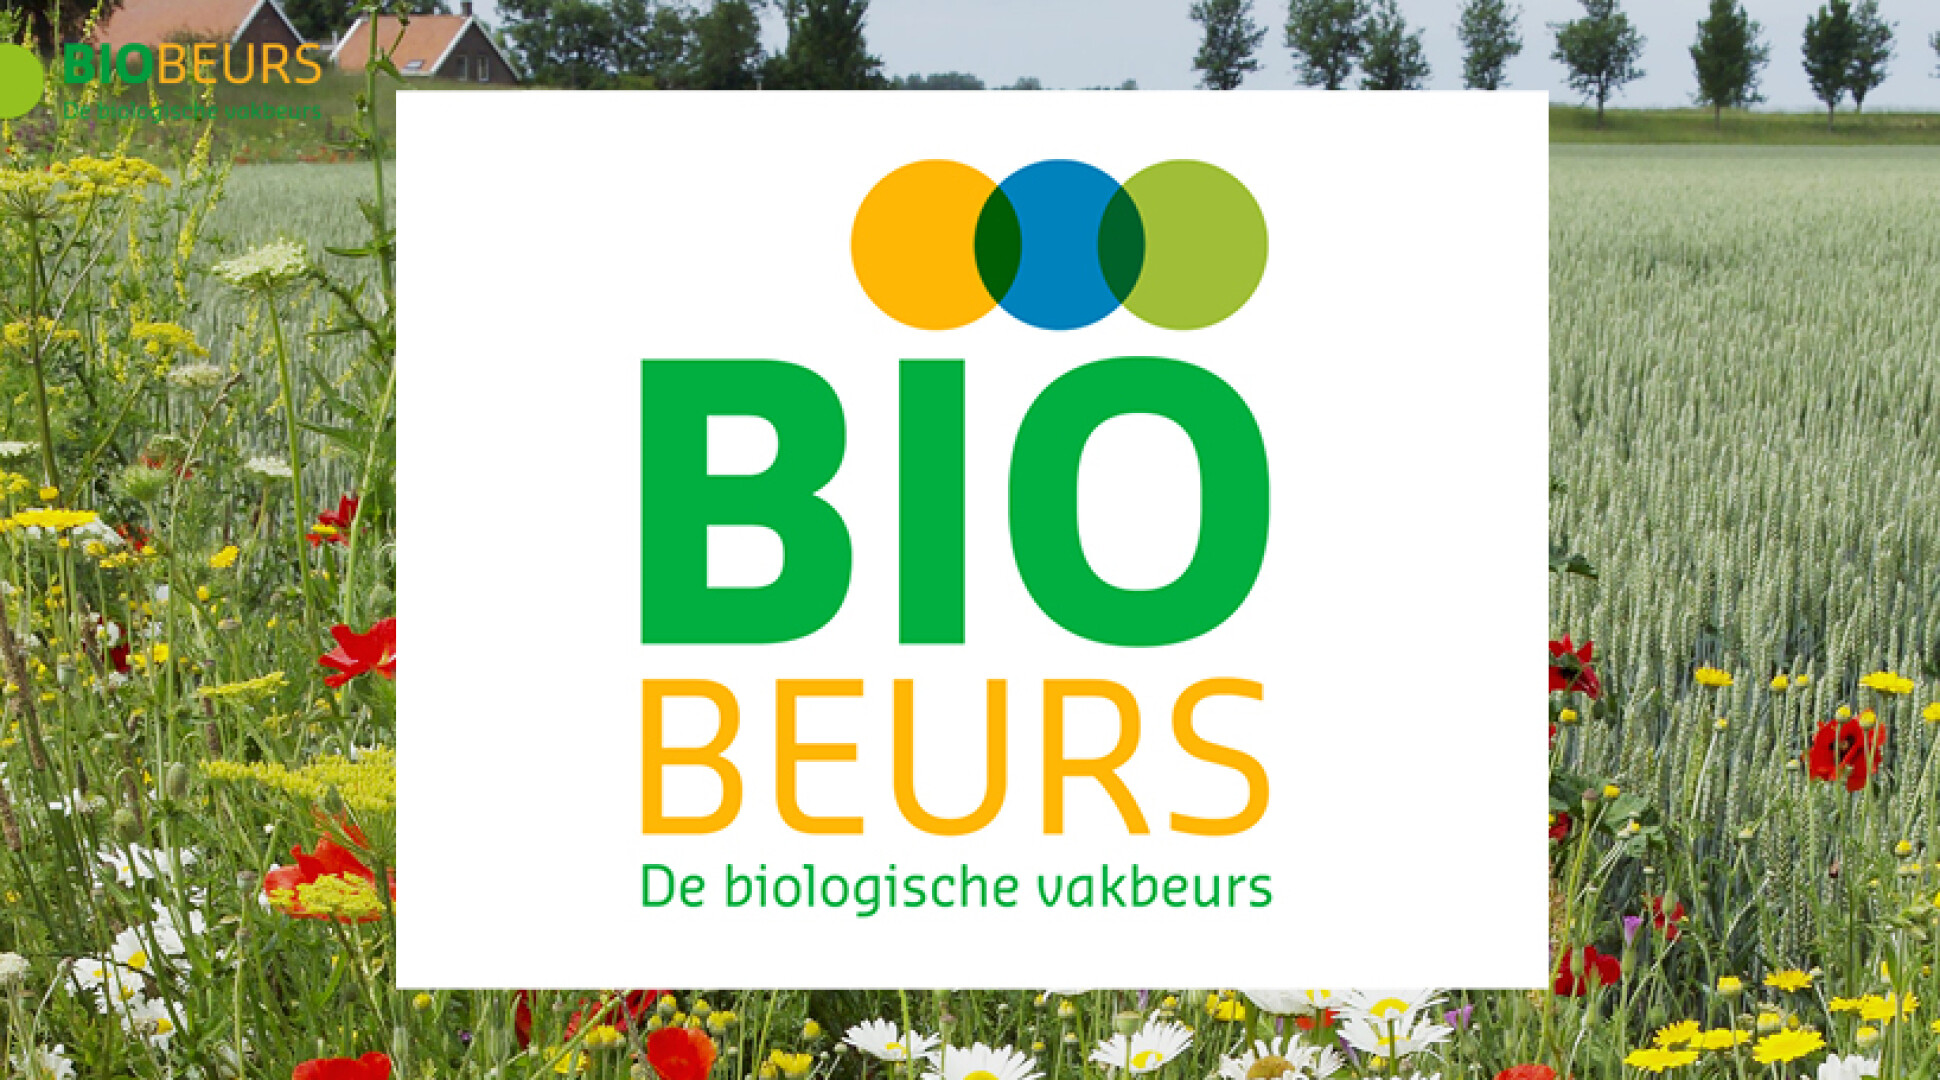 Programma BioBeurs bekend